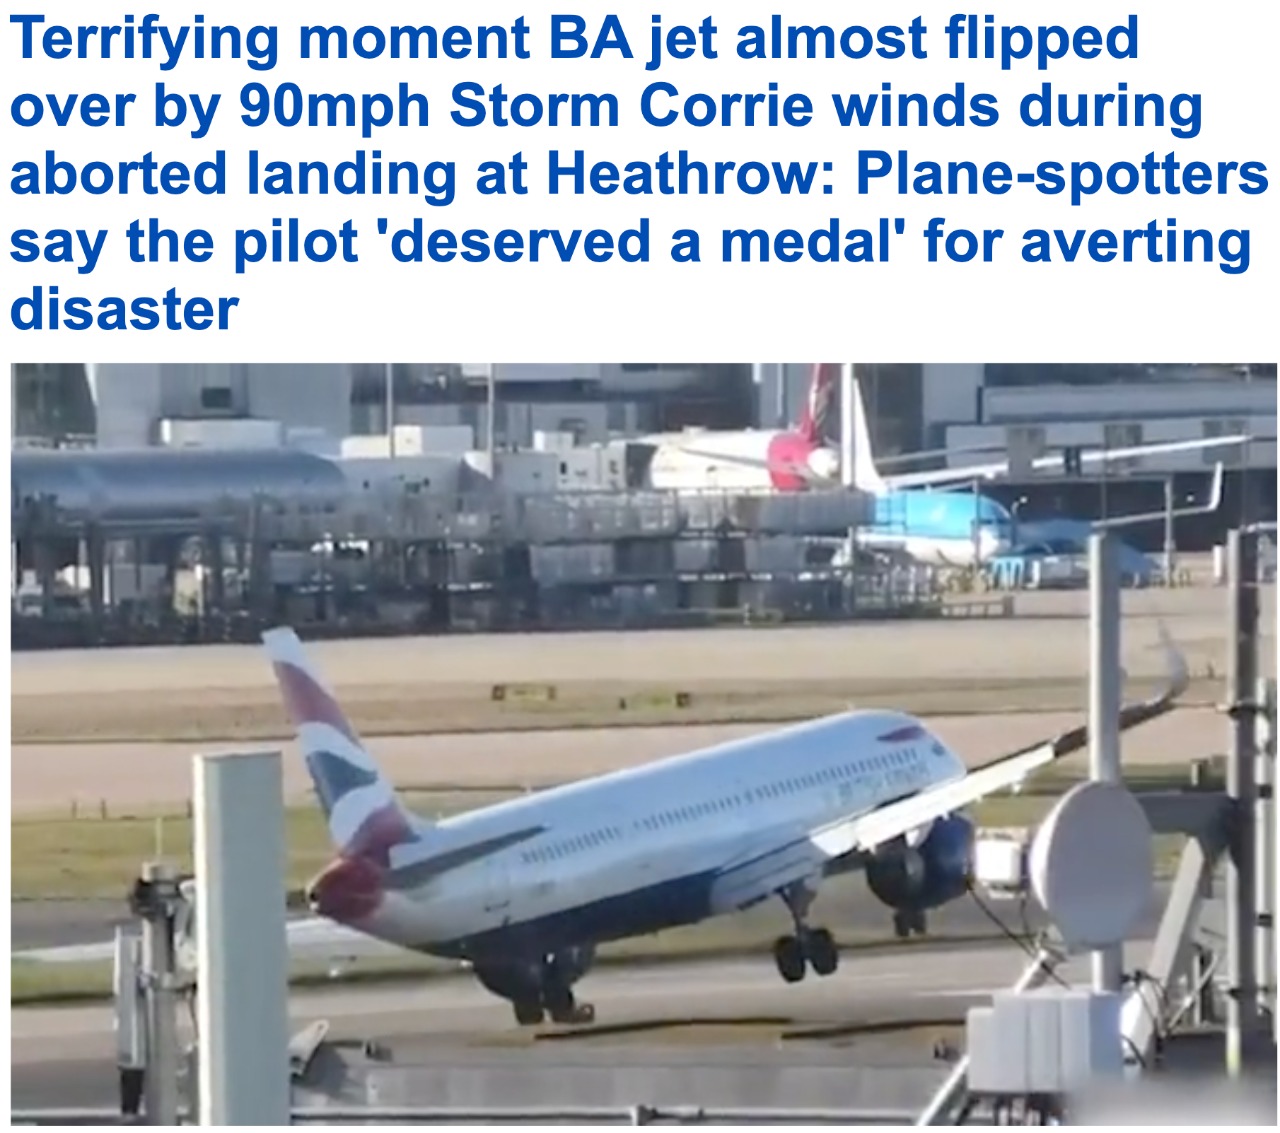 شاهد.. لحظة هبوط فاشلة لطائرة بريطانية في مطار هيثرو.. وإشادة بالطيار الذي تجنب وقوع كارثة